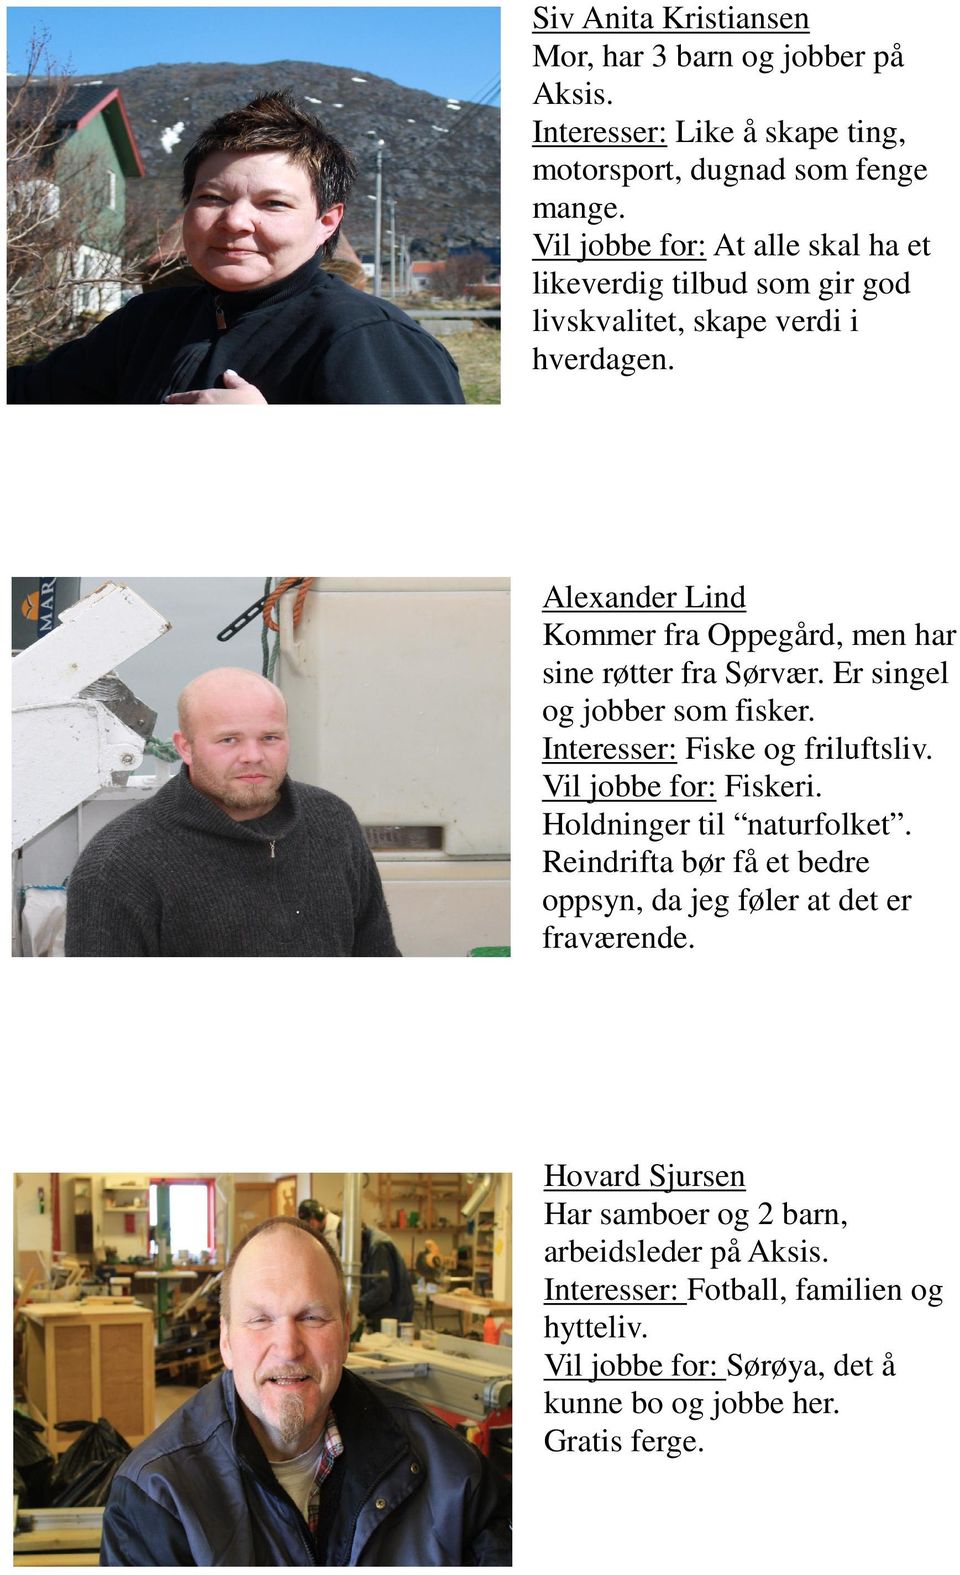 Alexander Lind Kommer fra Oppegård, men har sine røtter fra Sørvær. Er singel og jobber som fisker. Interesser: Fiske og friluftsliv. Vil jobbe for: Fiskeri.